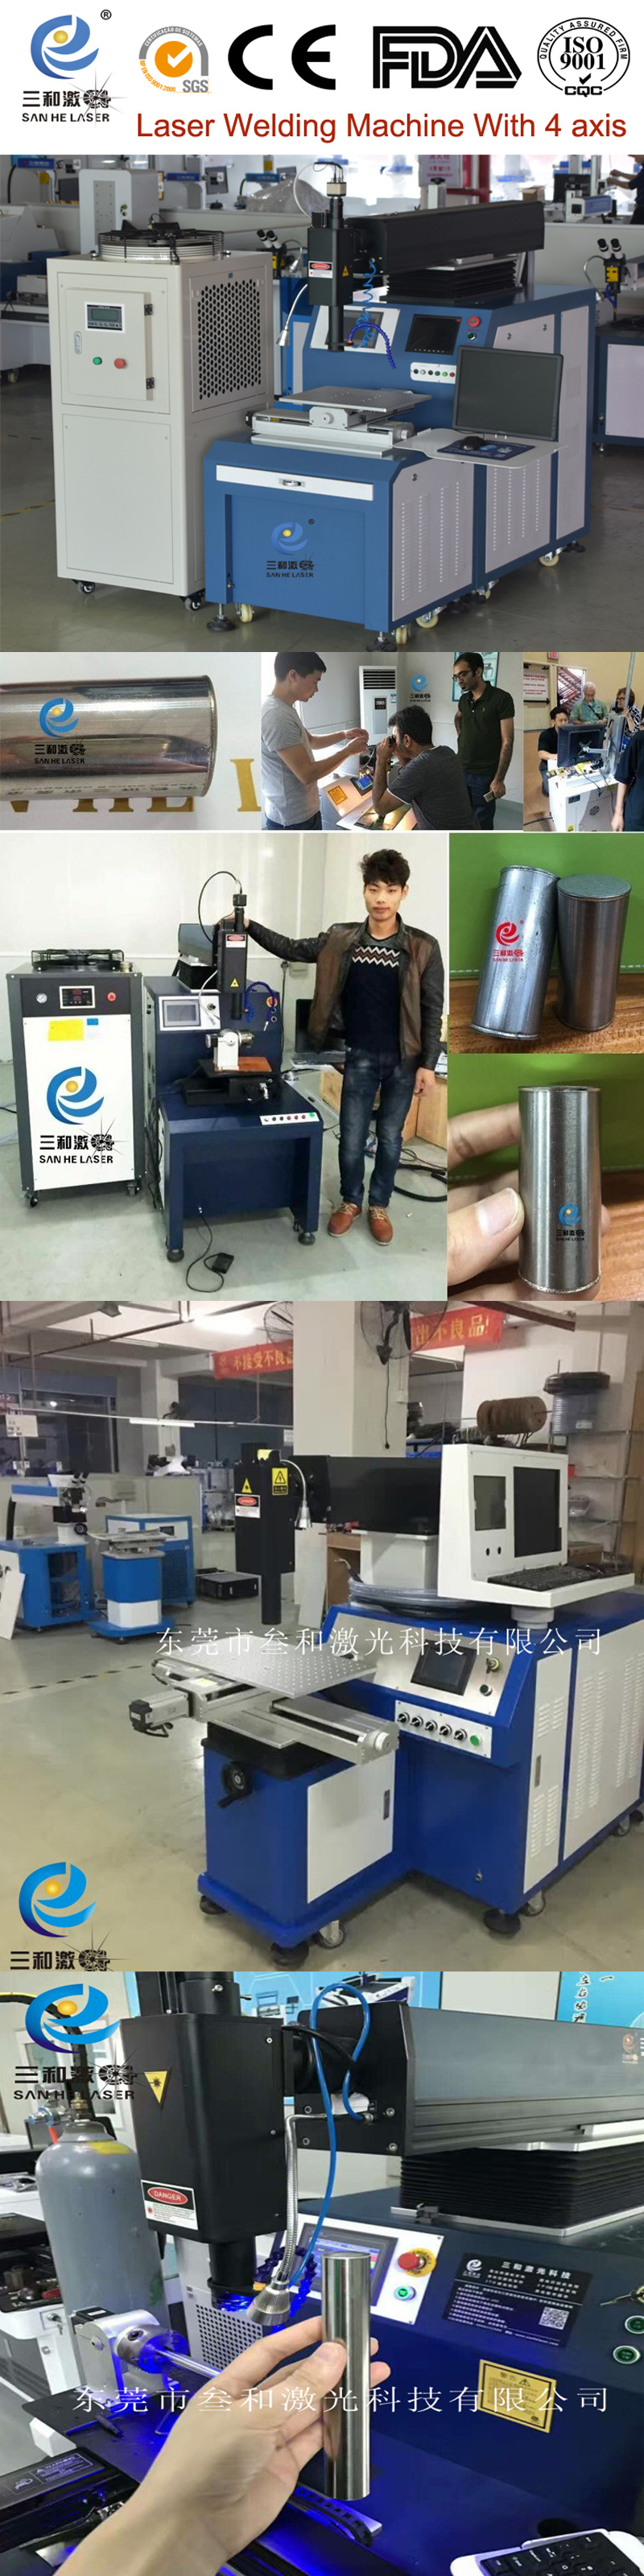 Sanhe Factory Price Laser Welding Machine & Laser Welder Price